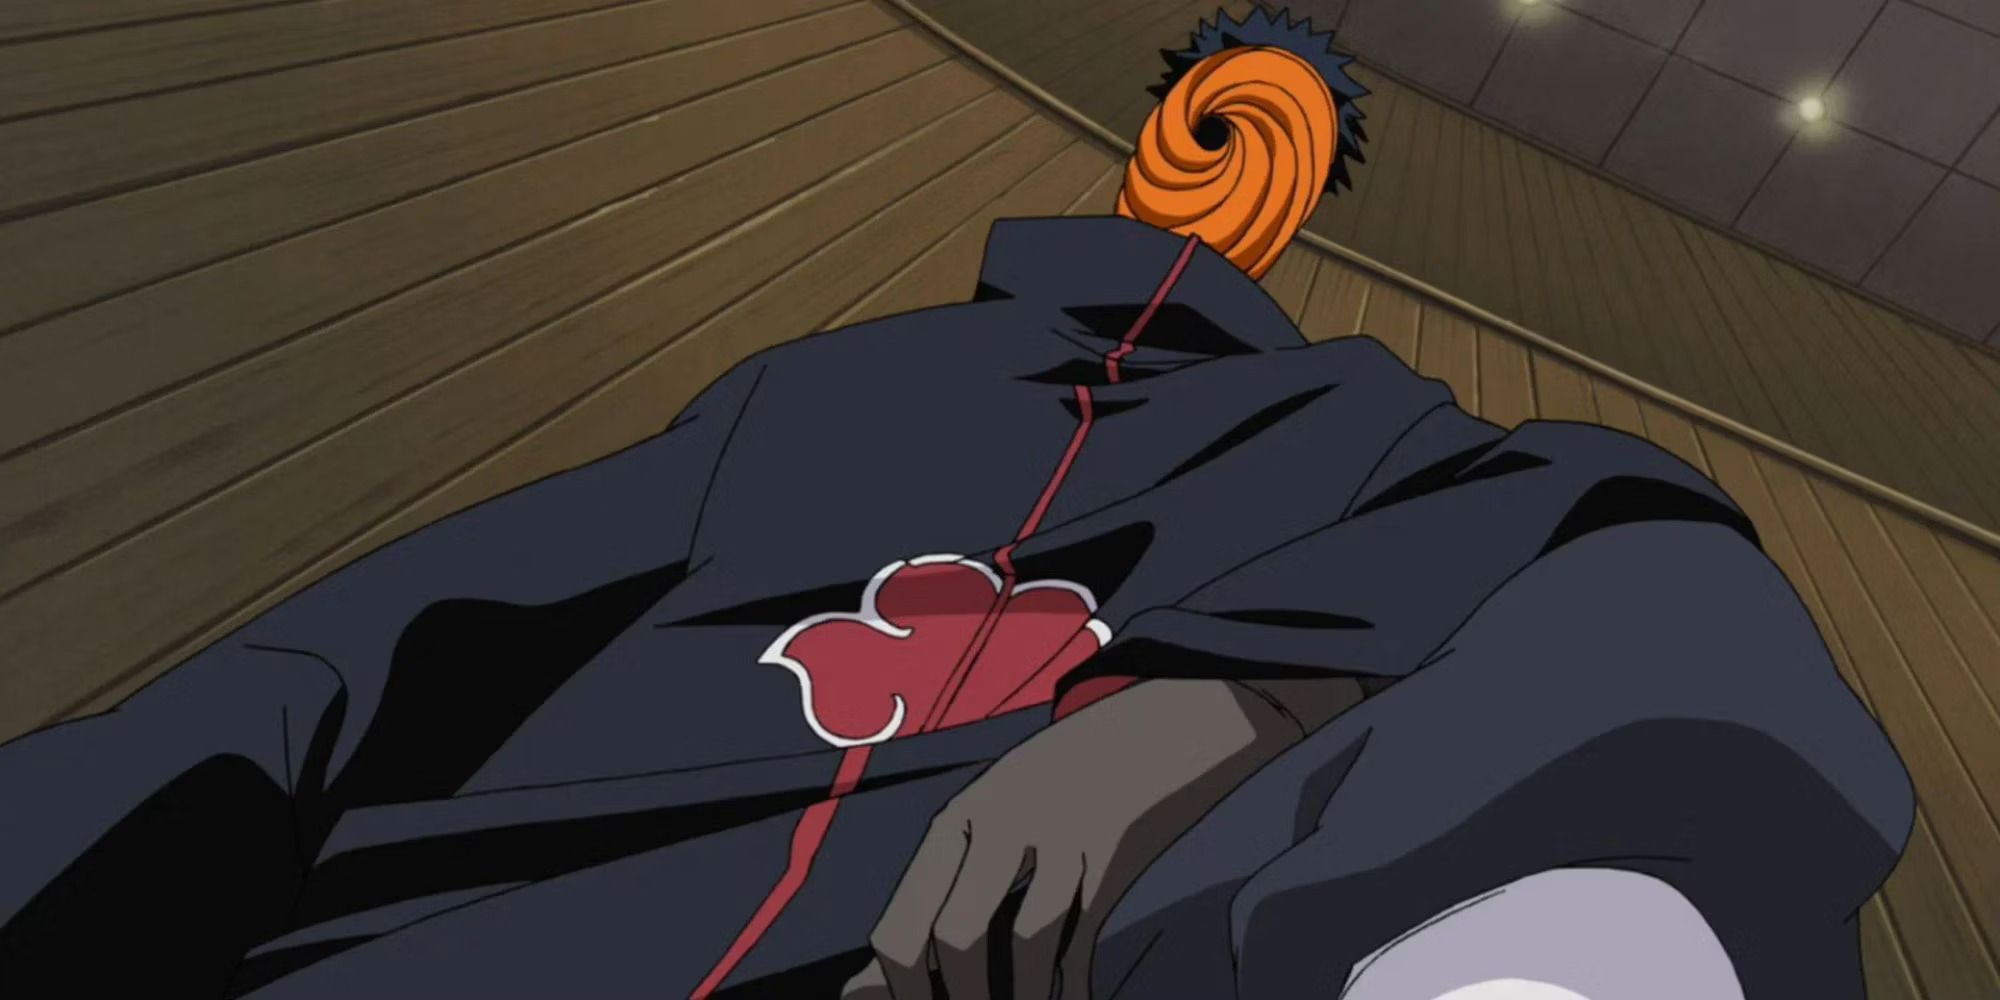 Obito Uchiha as Madara Uchiha wearing his orange swirl mask in Naruto: Shippuden